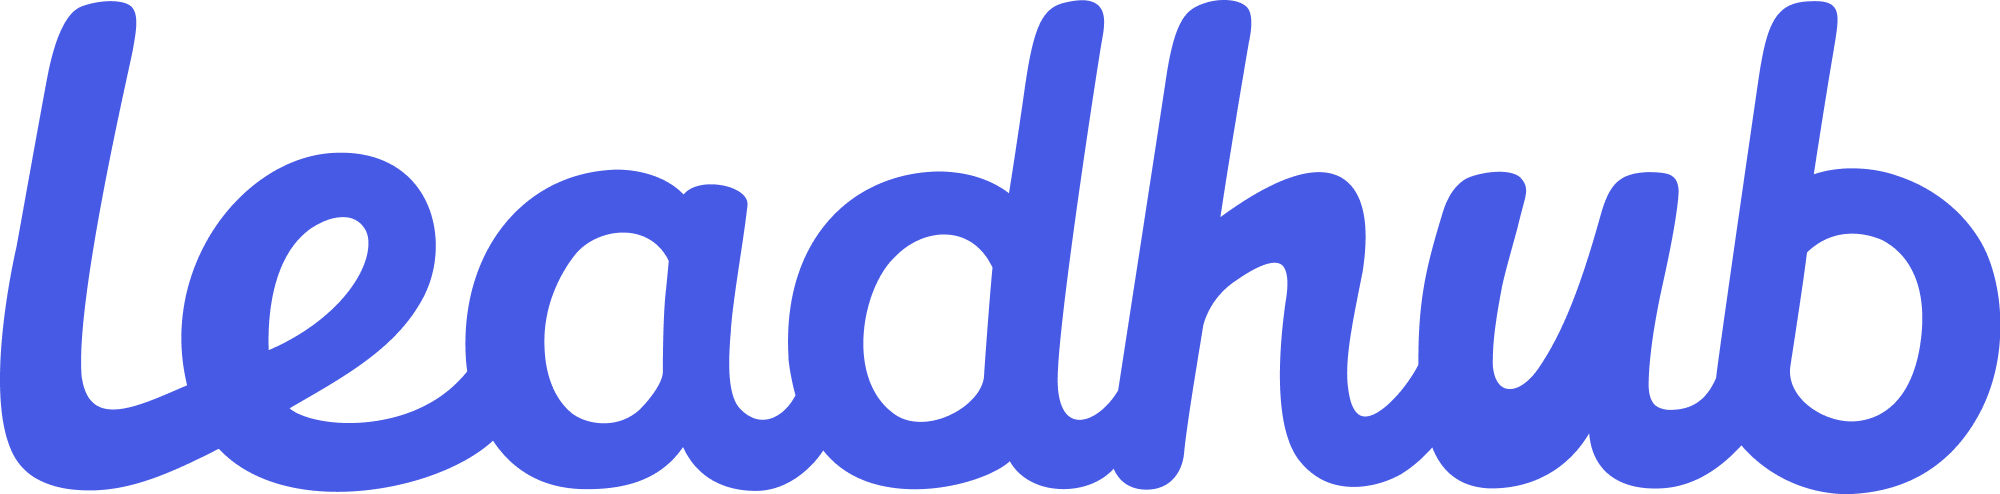 Leadhub_logo_blue (1)